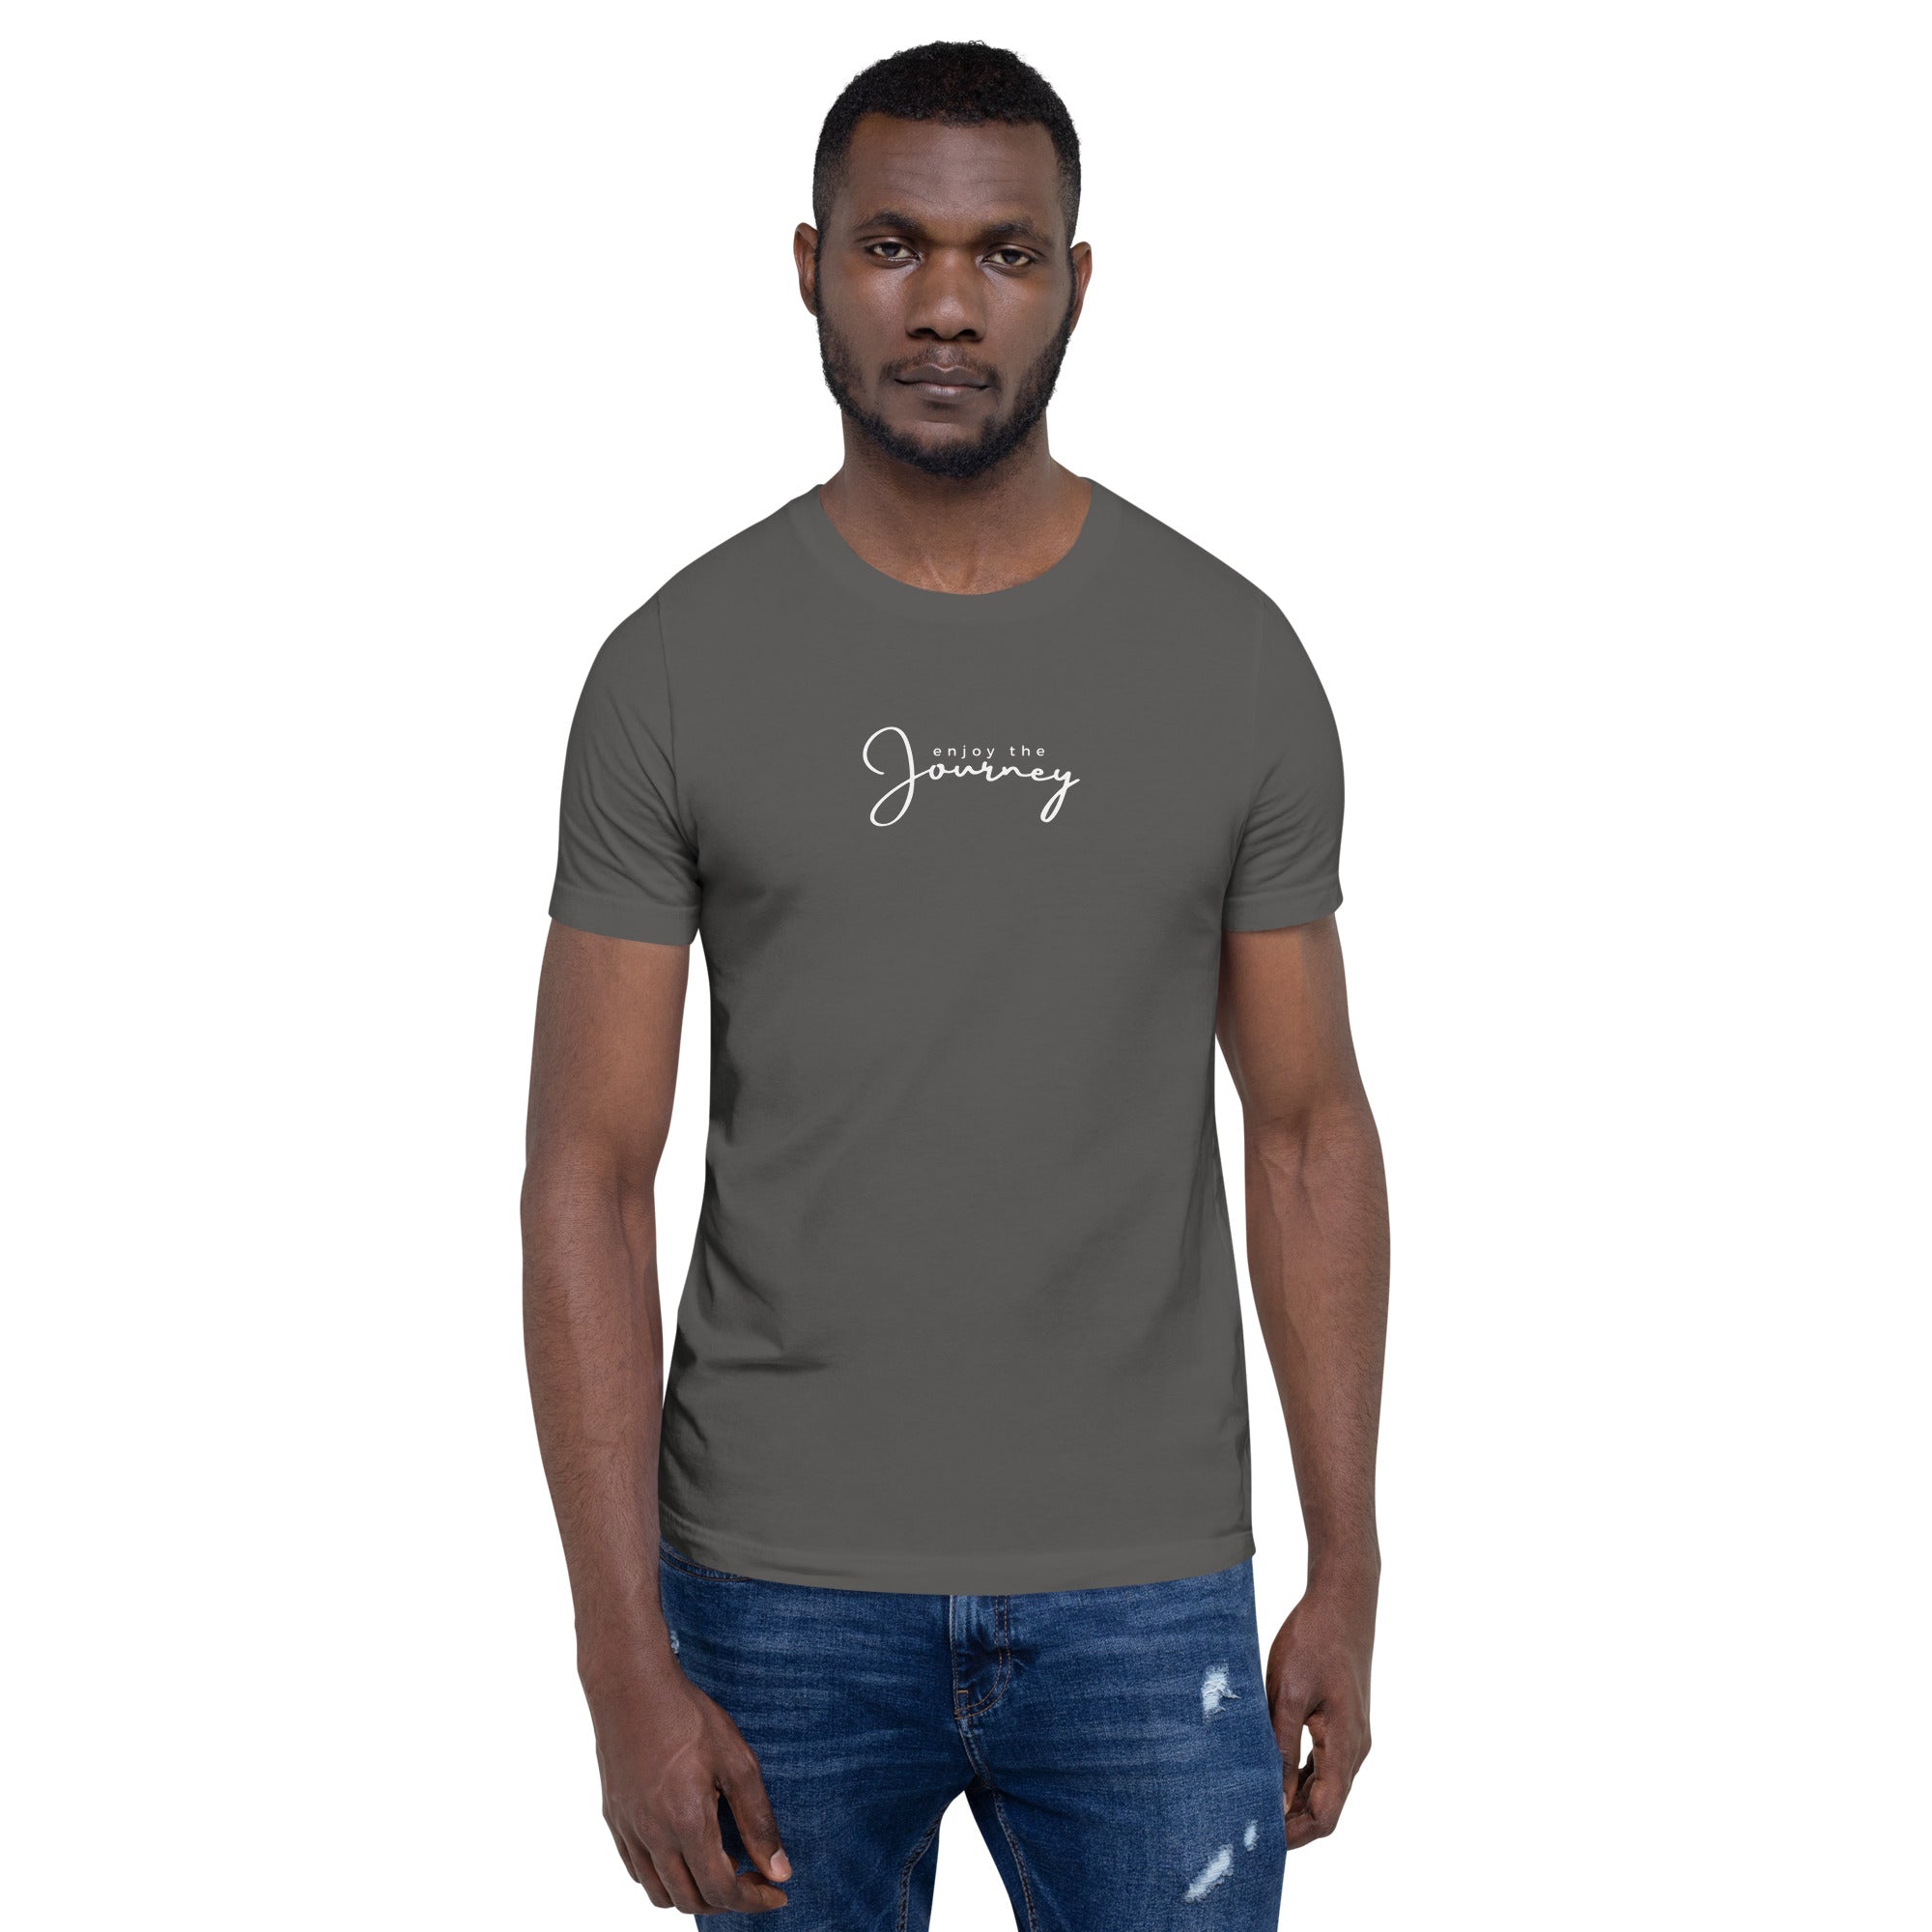 *Enjoy The Journey* Short-Sleeve Unisex T-shirt